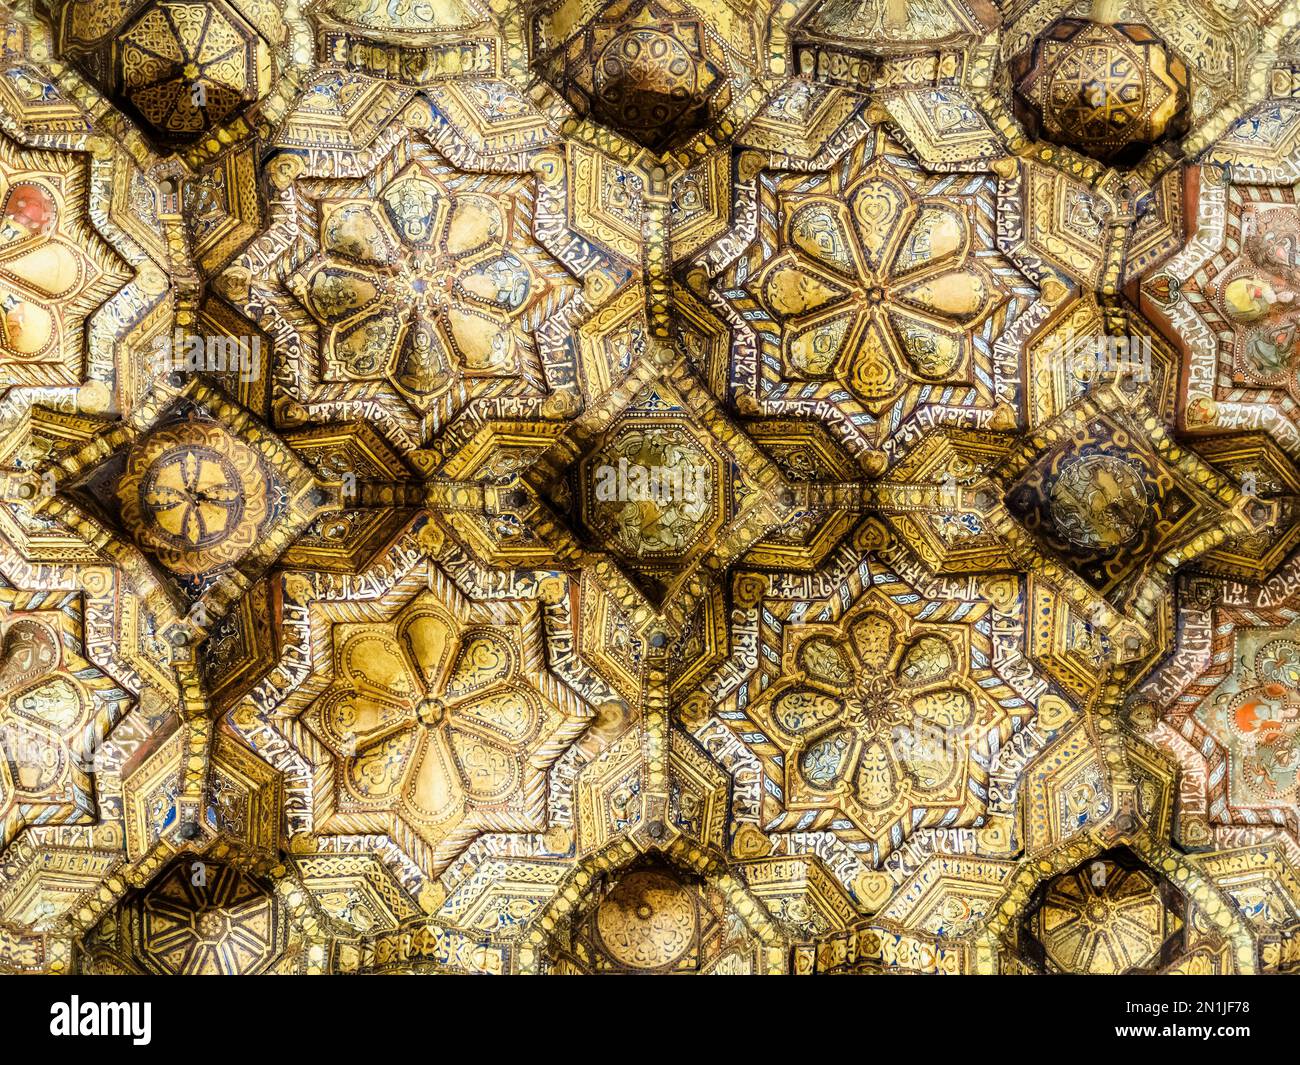 Particolare del soffitto Muqarnas della navata nella Cappella Palatina del Palazzo Normanno a Palermo - Sicilia, Italia Foto Stock